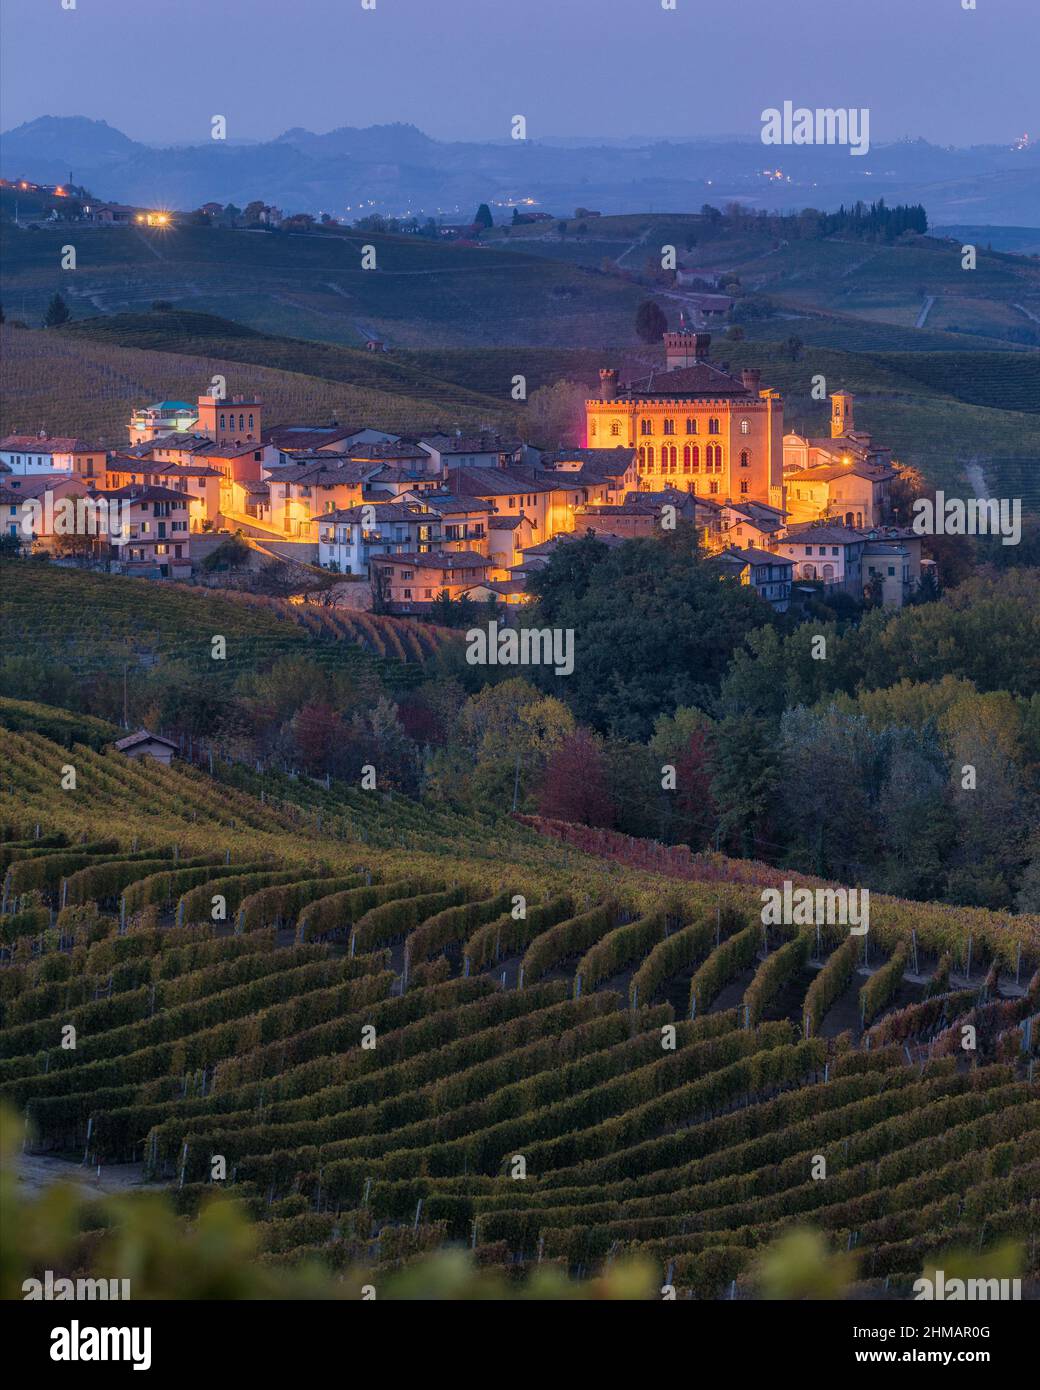 Villaggio Barolo al tramonto durante la stagione autunnale. Regione delle Langhe del Piemonte, Cuneo, Italia settentrionale. Foto Stock